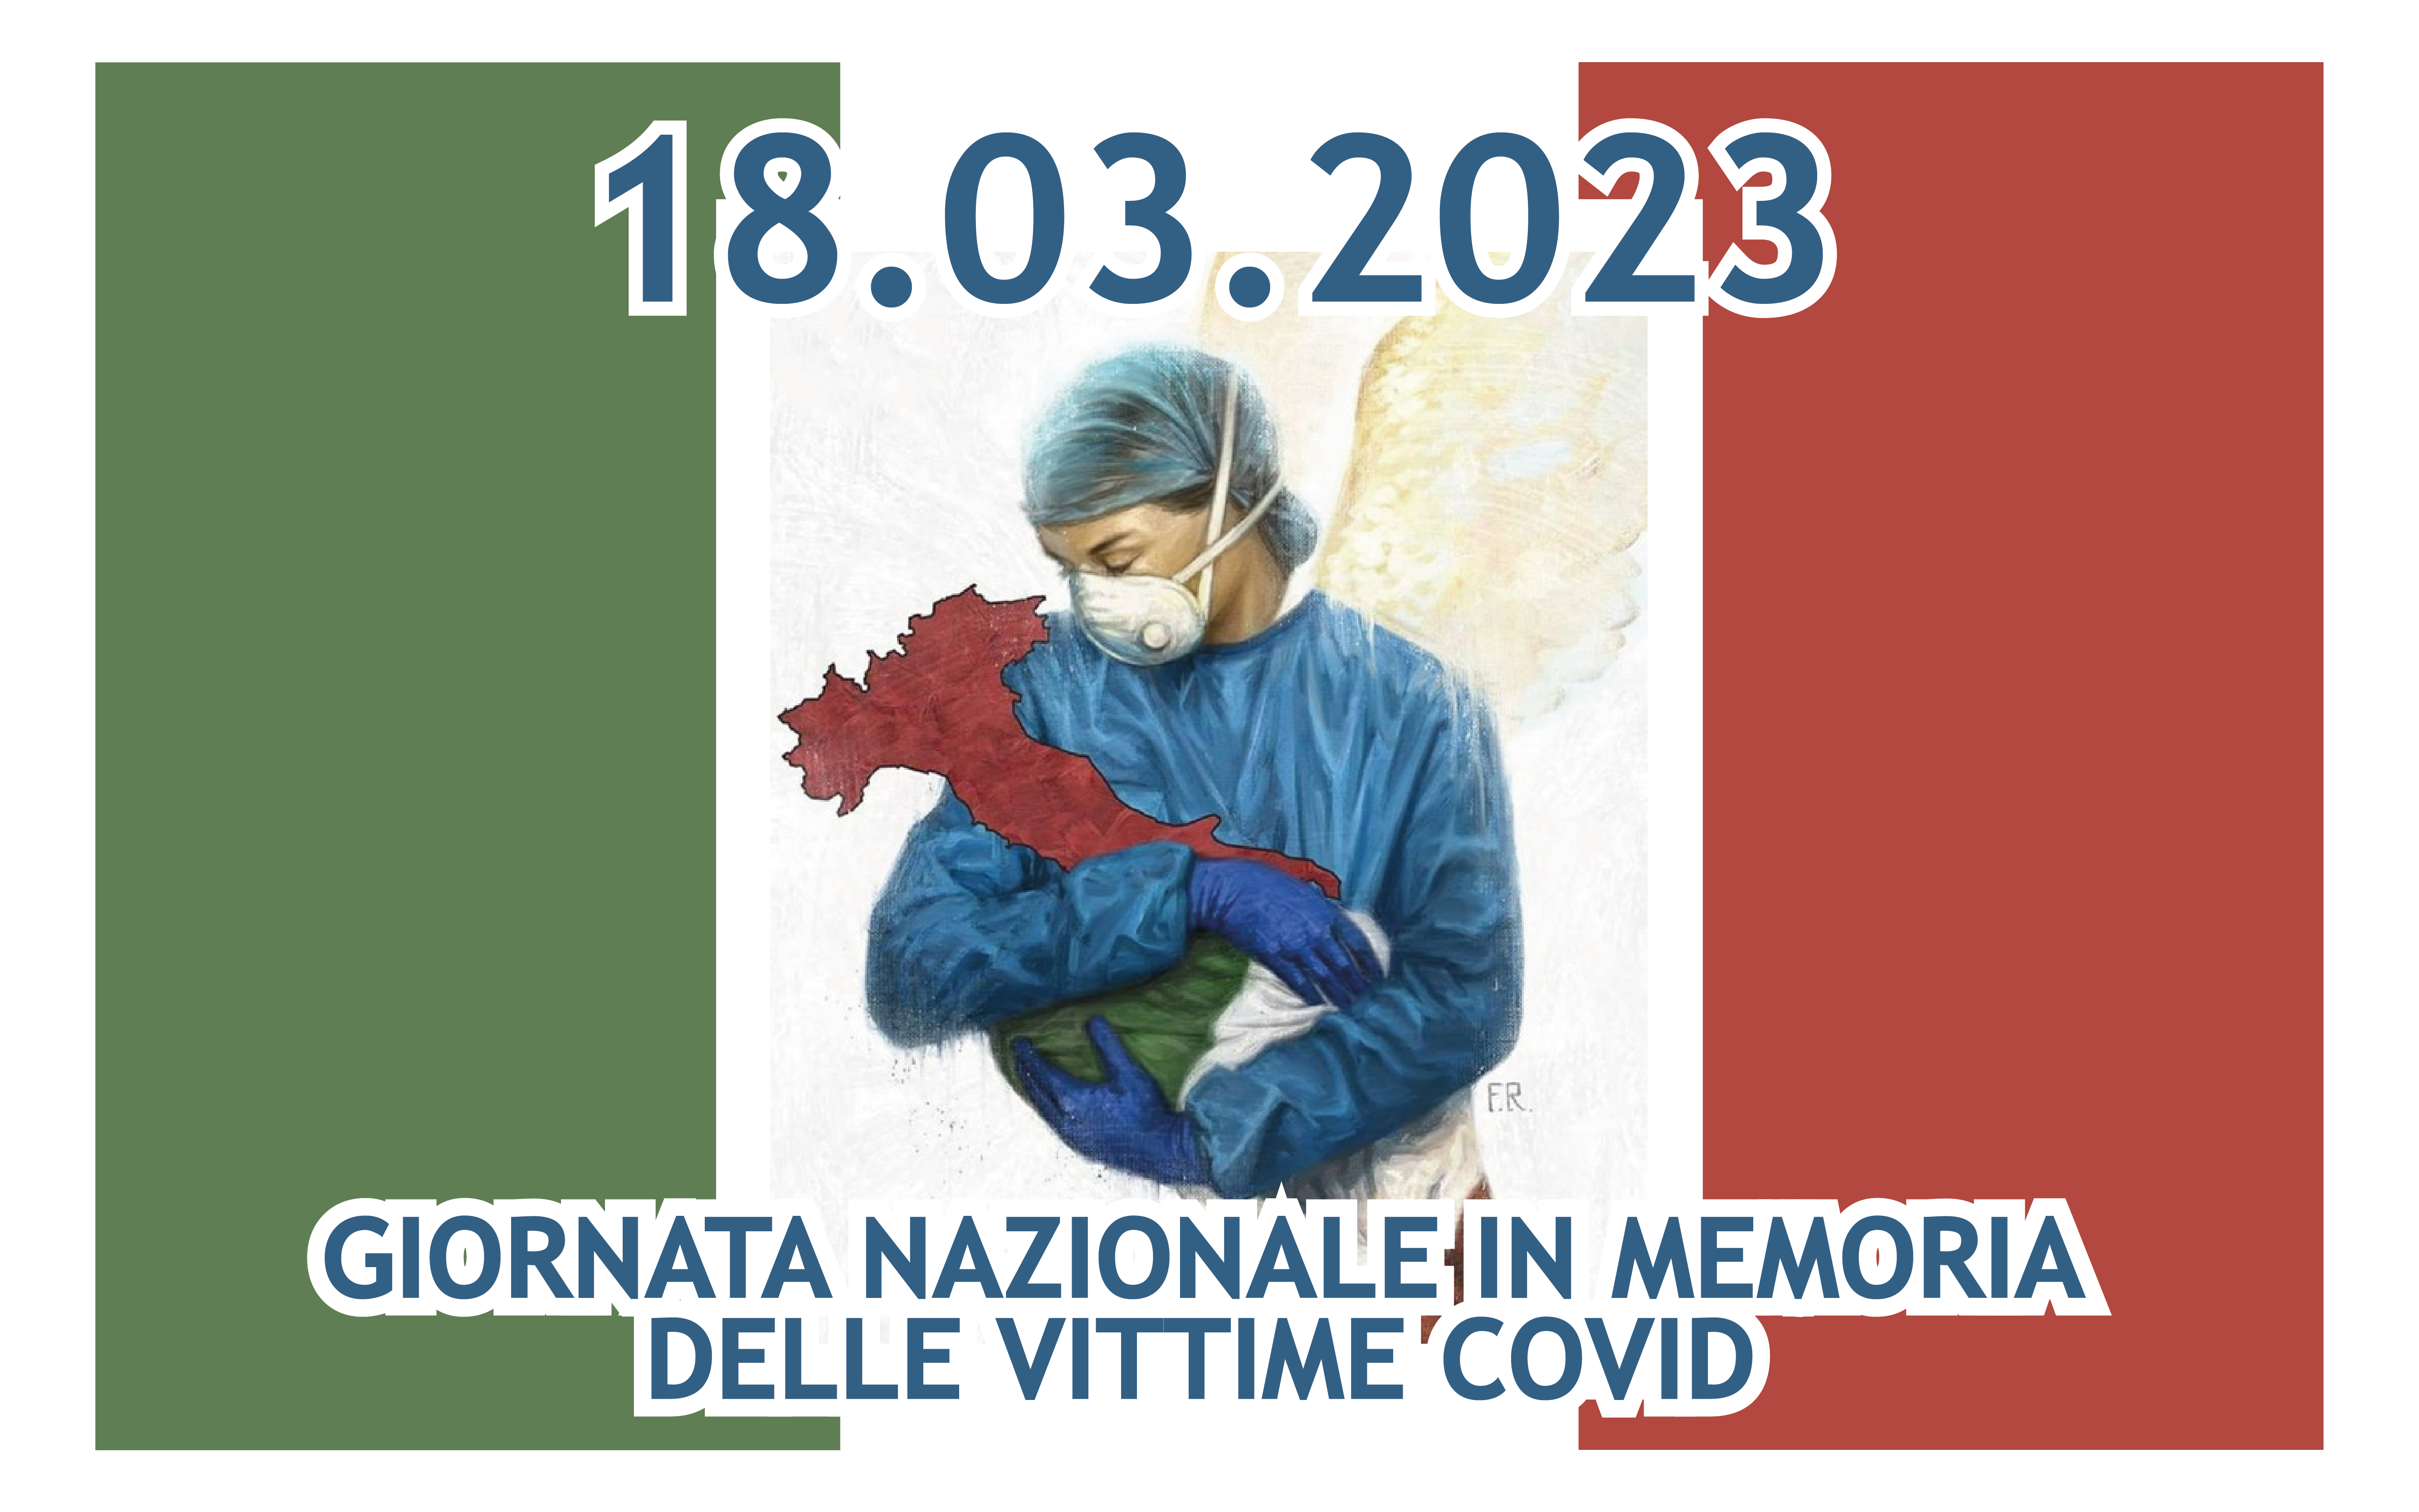 immagine 18 Marzo, Giornata nazionale in memoria delle vittime del Covid